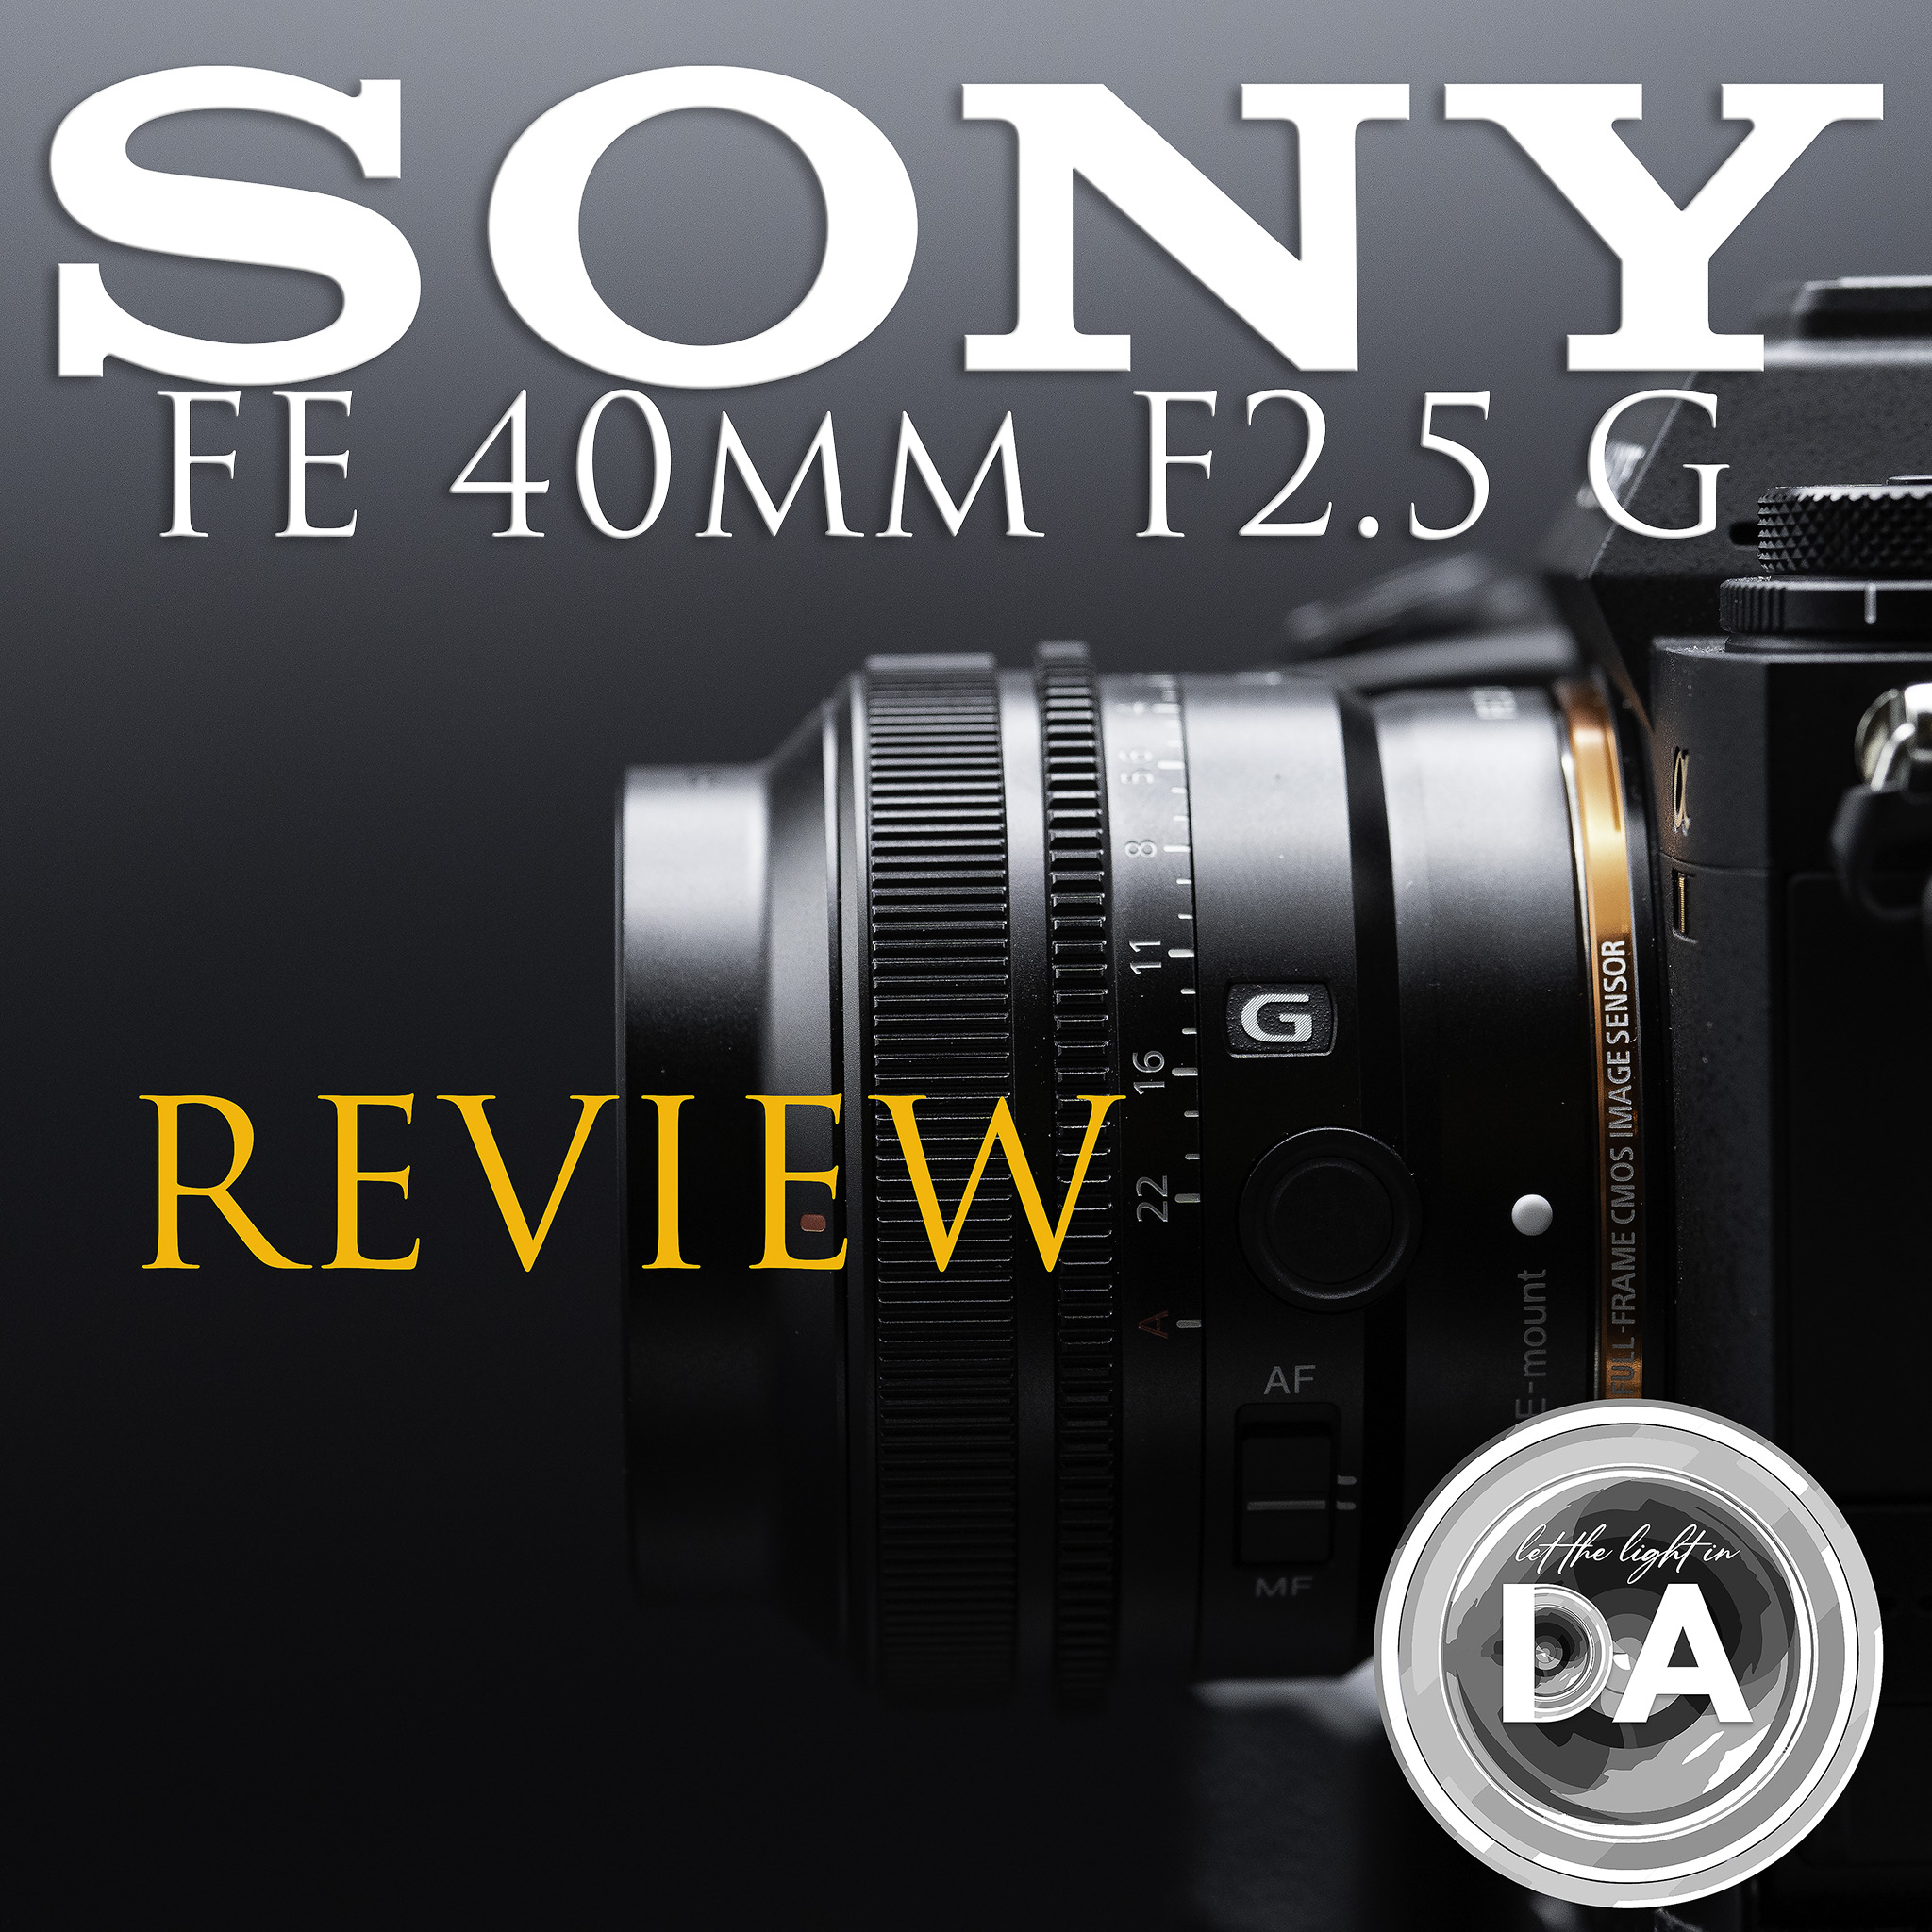 Sony FE 35mm 1.8 or Sony 40mm f2.5 G?: Sony Alpha Full Frame E